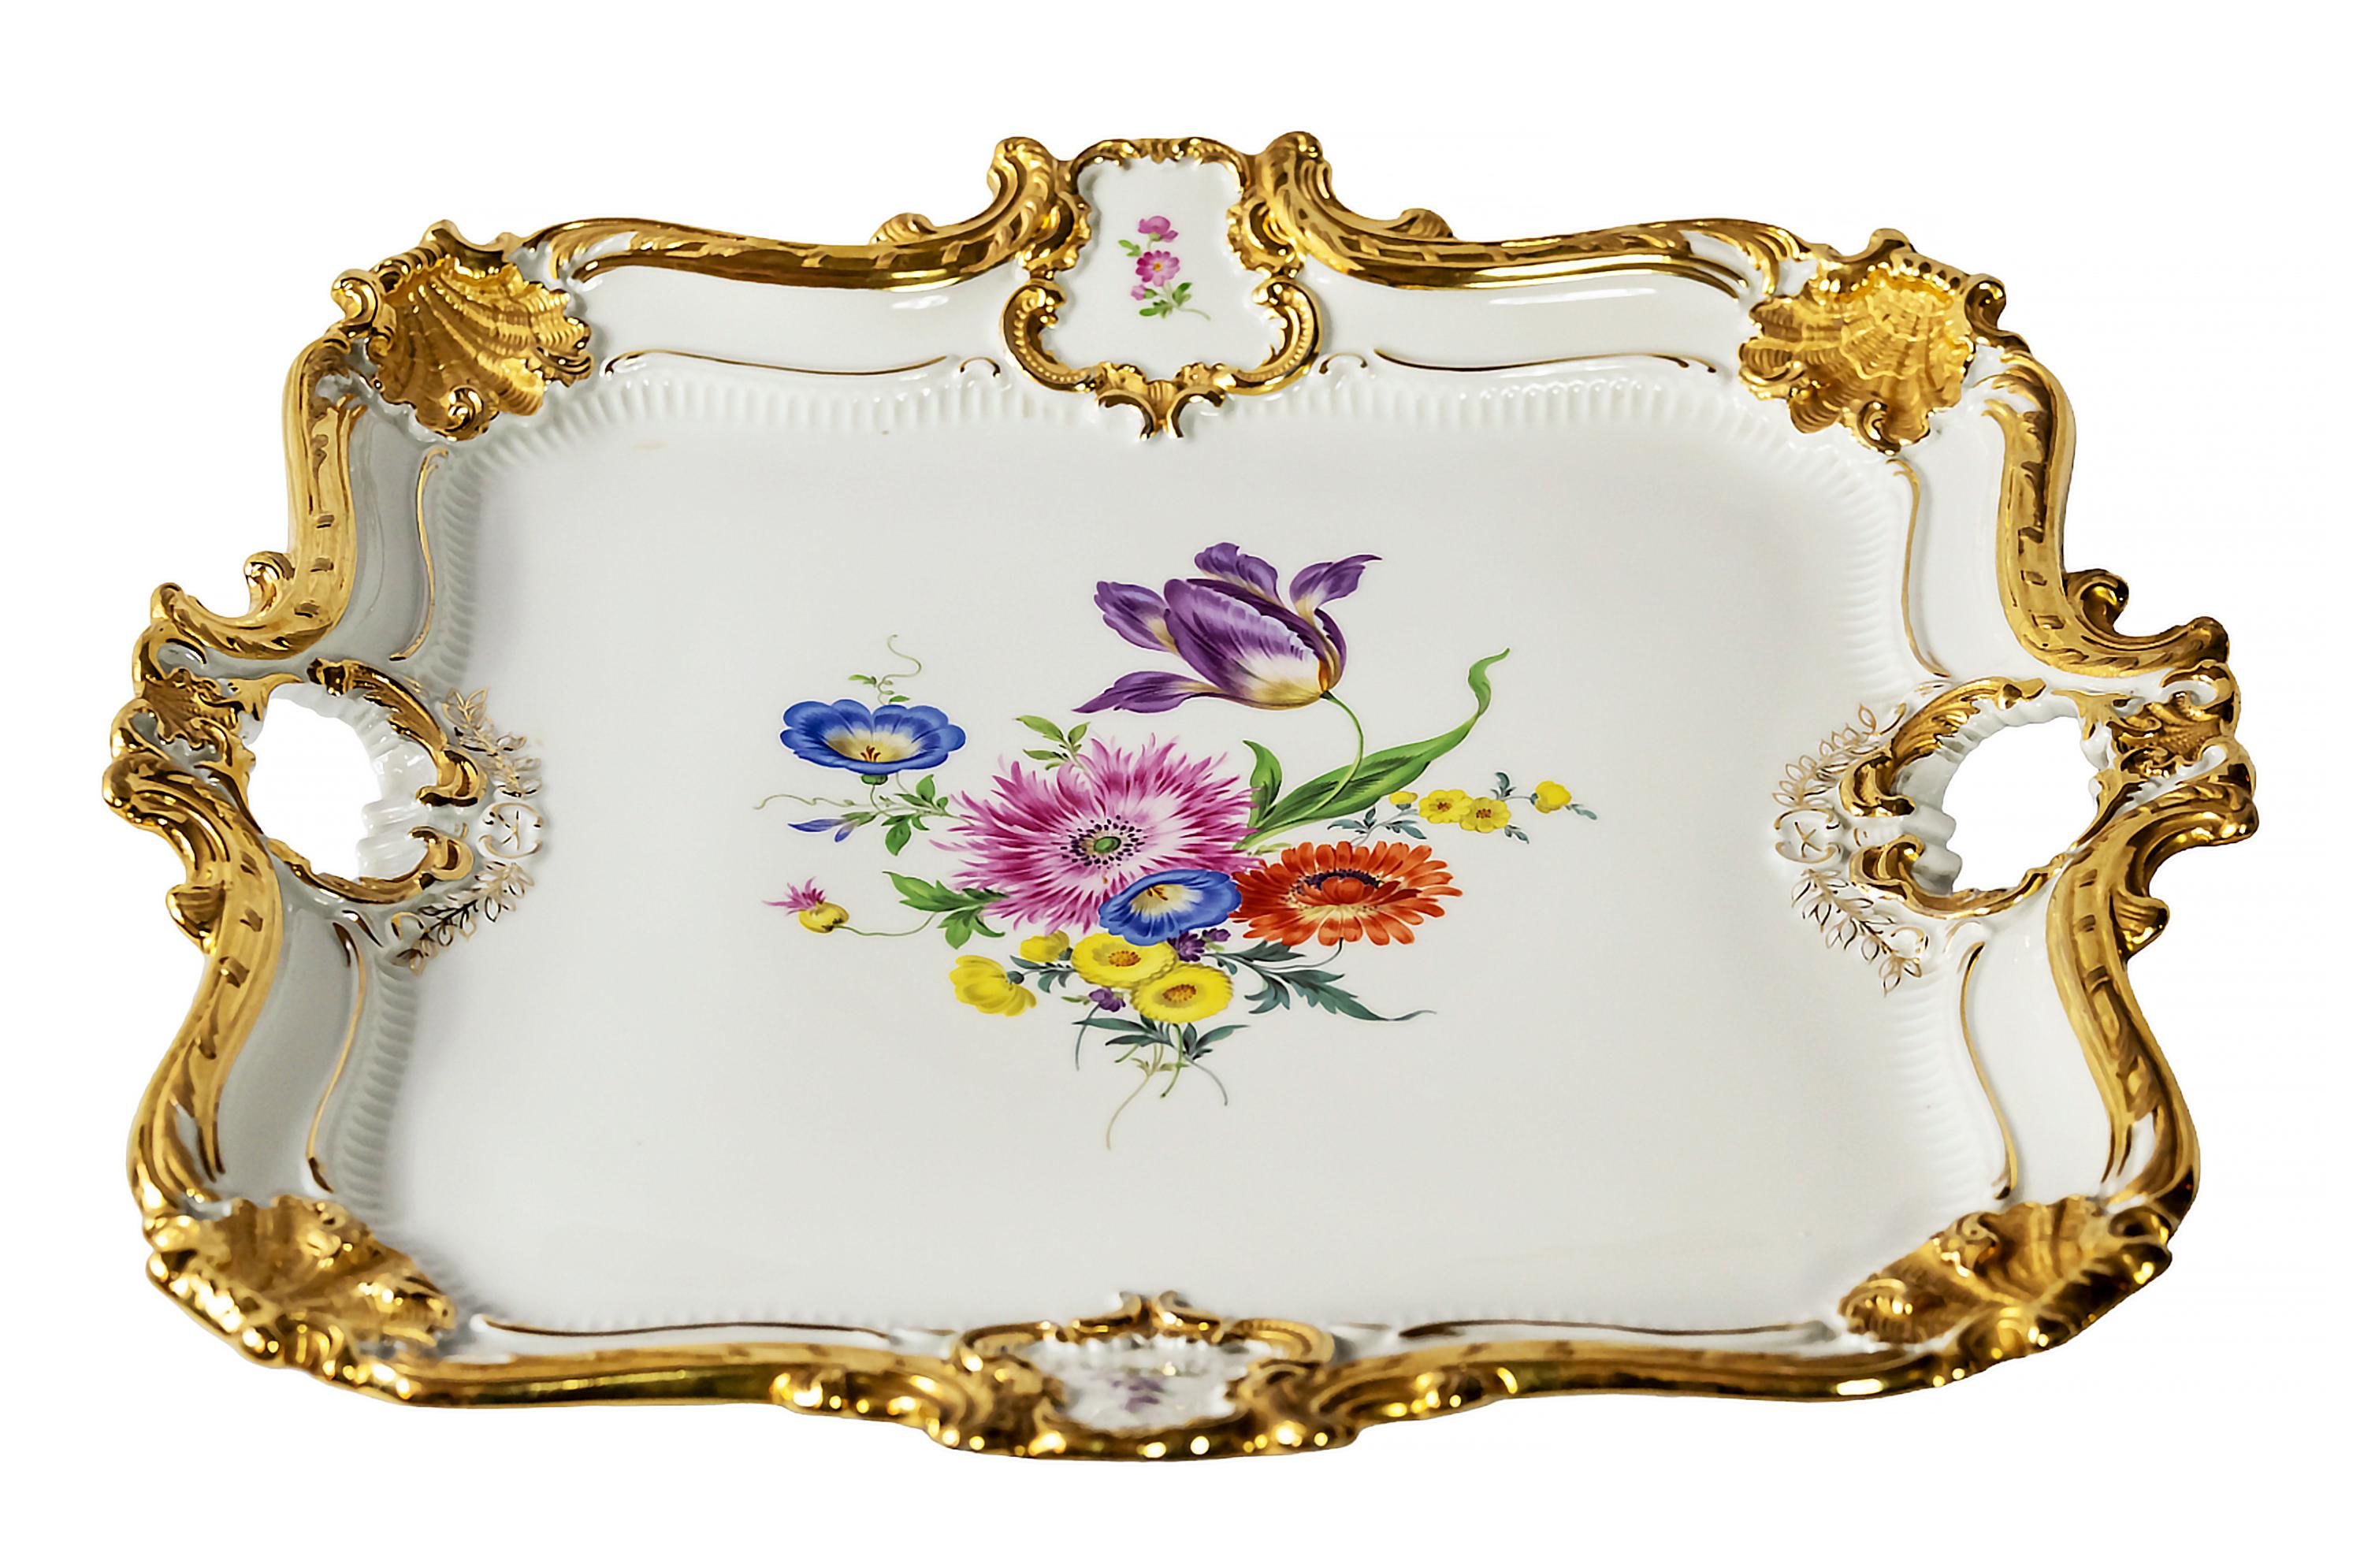 Große Servierplatte aus Meissener Porzellan mit handgemalten floralen Motiven und reichem Golddekor.
Markiert auf der Unterseite. Schwert mit zwei Hiebe.